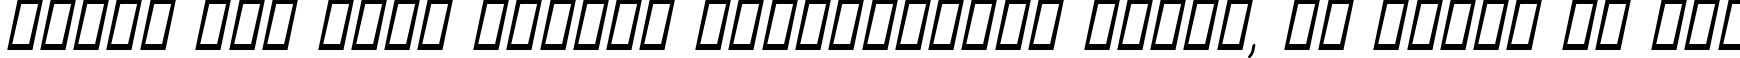 Пример написания шрифтом Aunchanted Oblique текста на русском